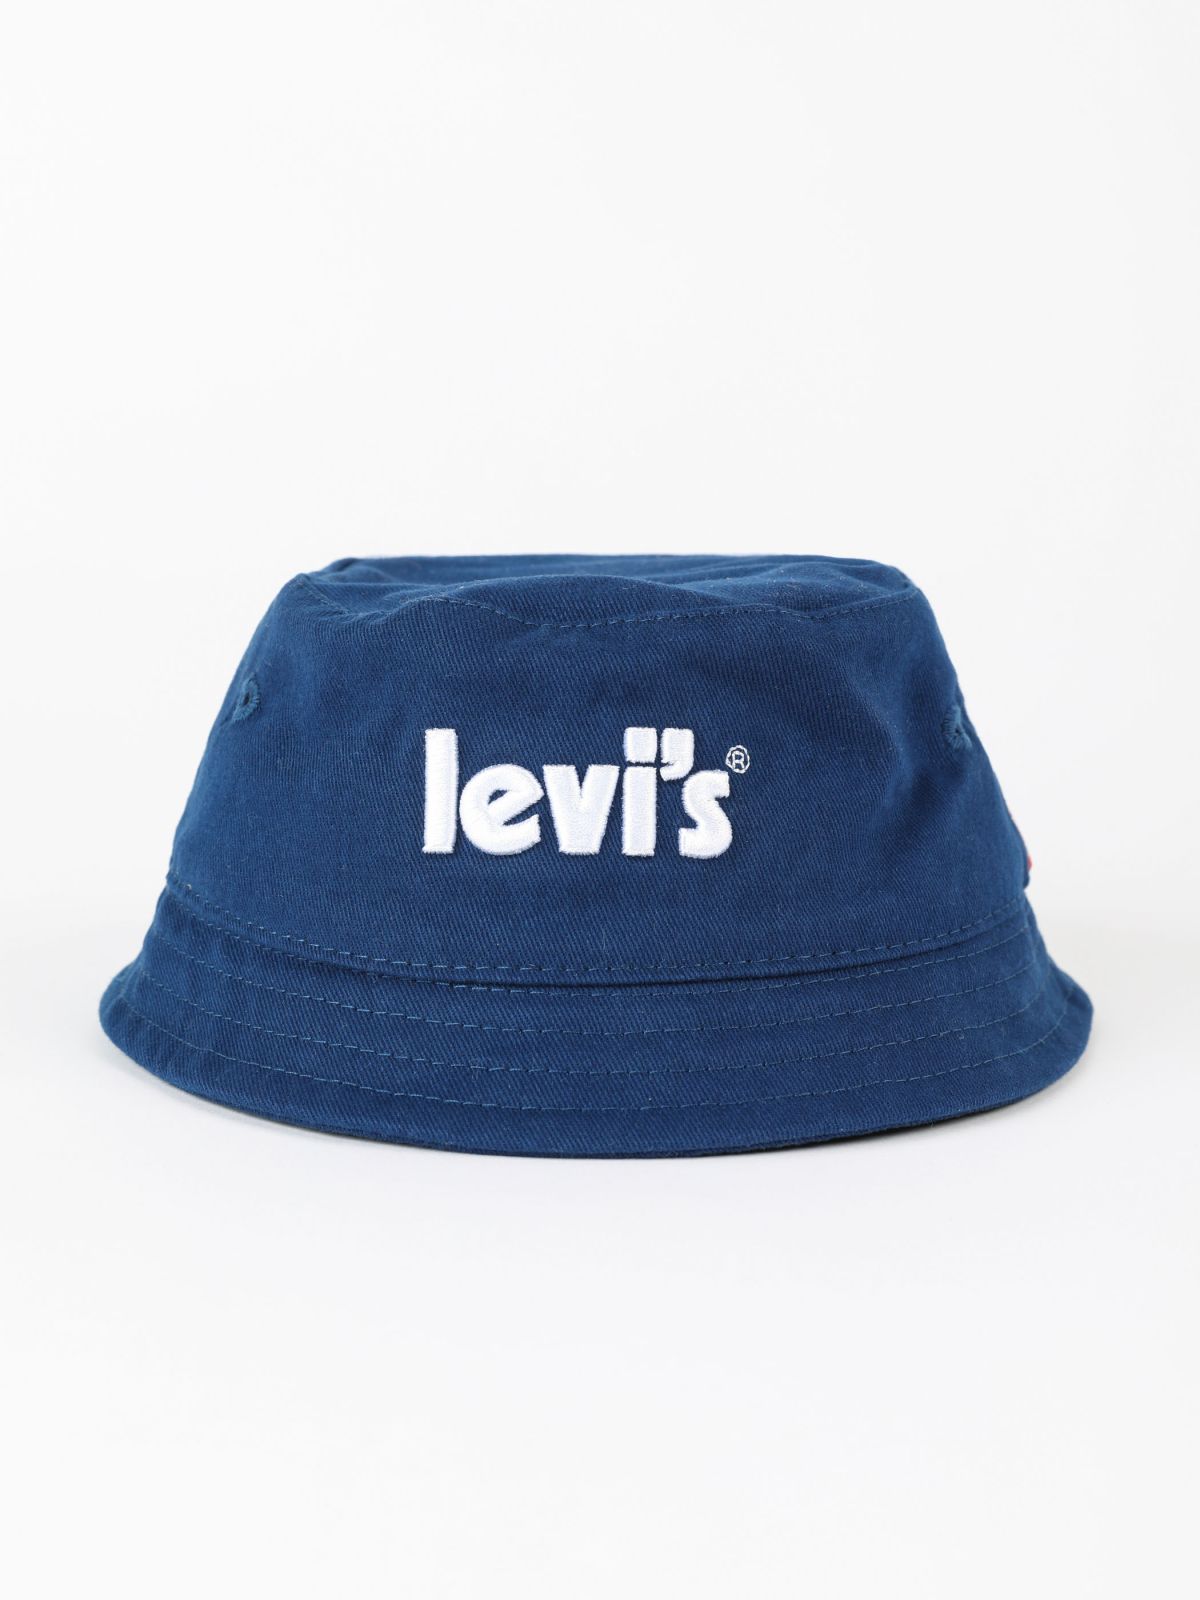  כובע באקט עם רקמת לוגו LEVIS / בנים של LEVIS